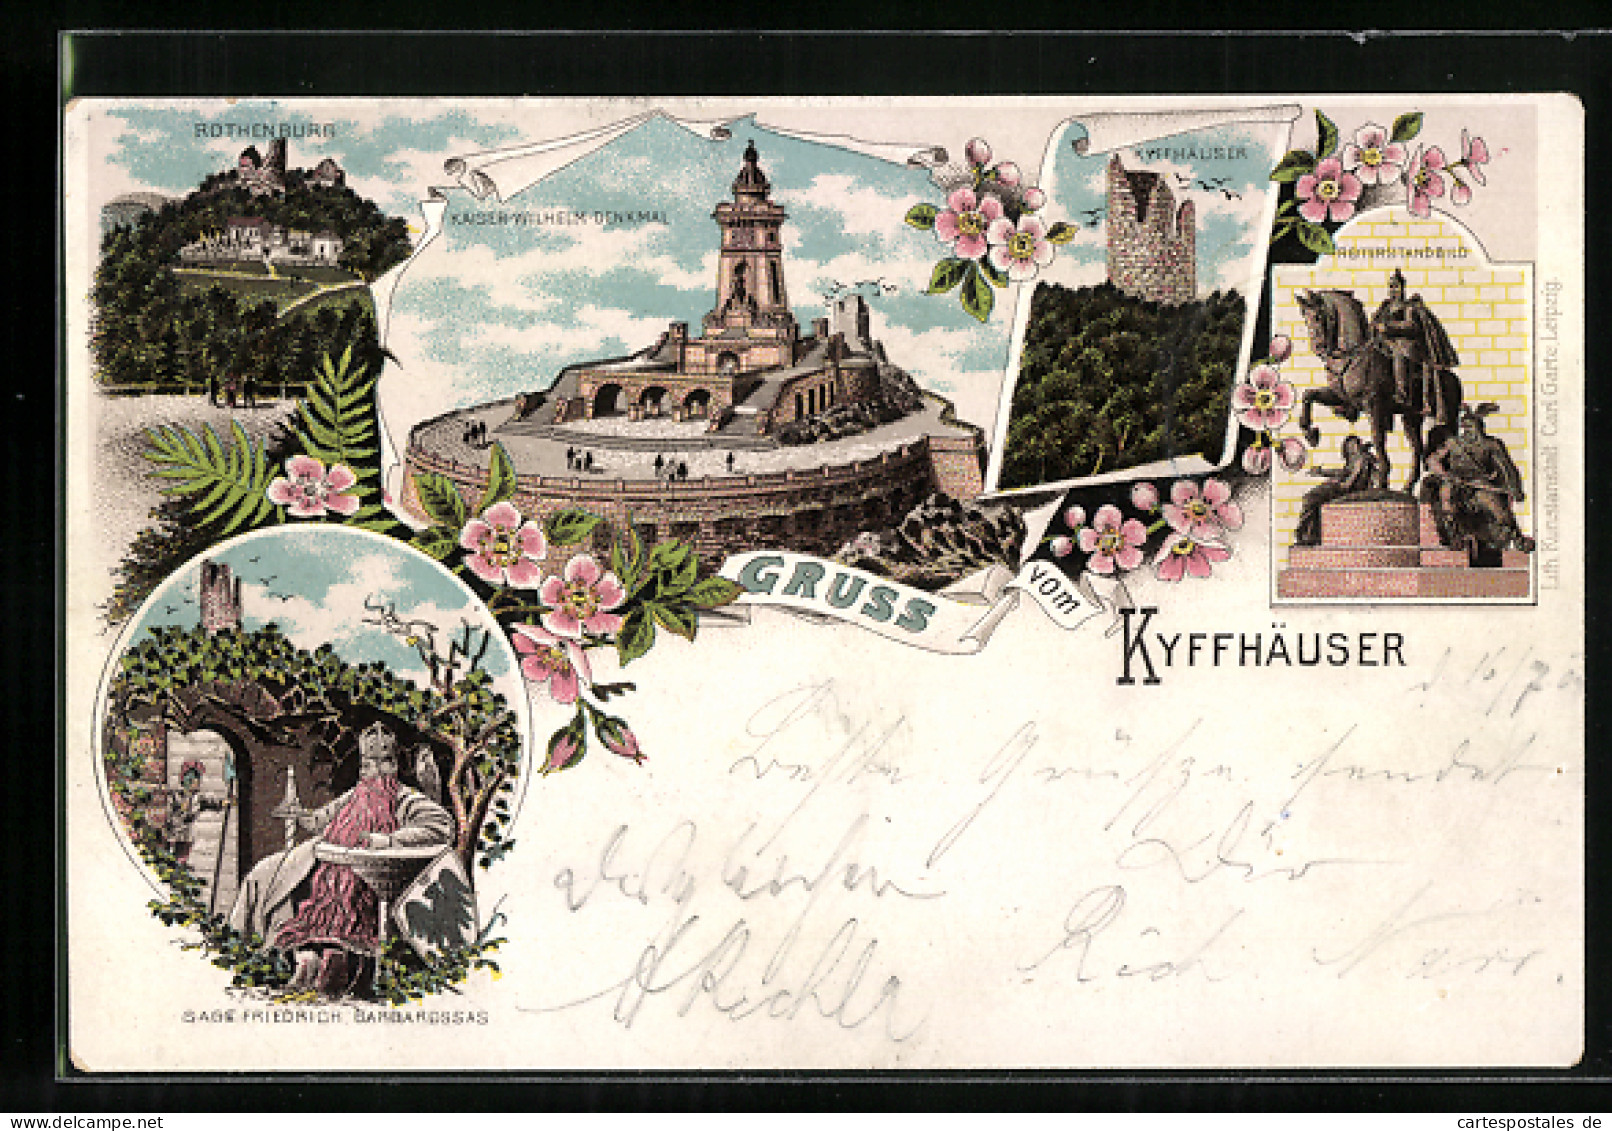 Lithographie Kyffhäuser, Rothenburg, Friedrich Barbarossa Und Kaiser-Wilhelm-Denkmal  - Kyffhäuser